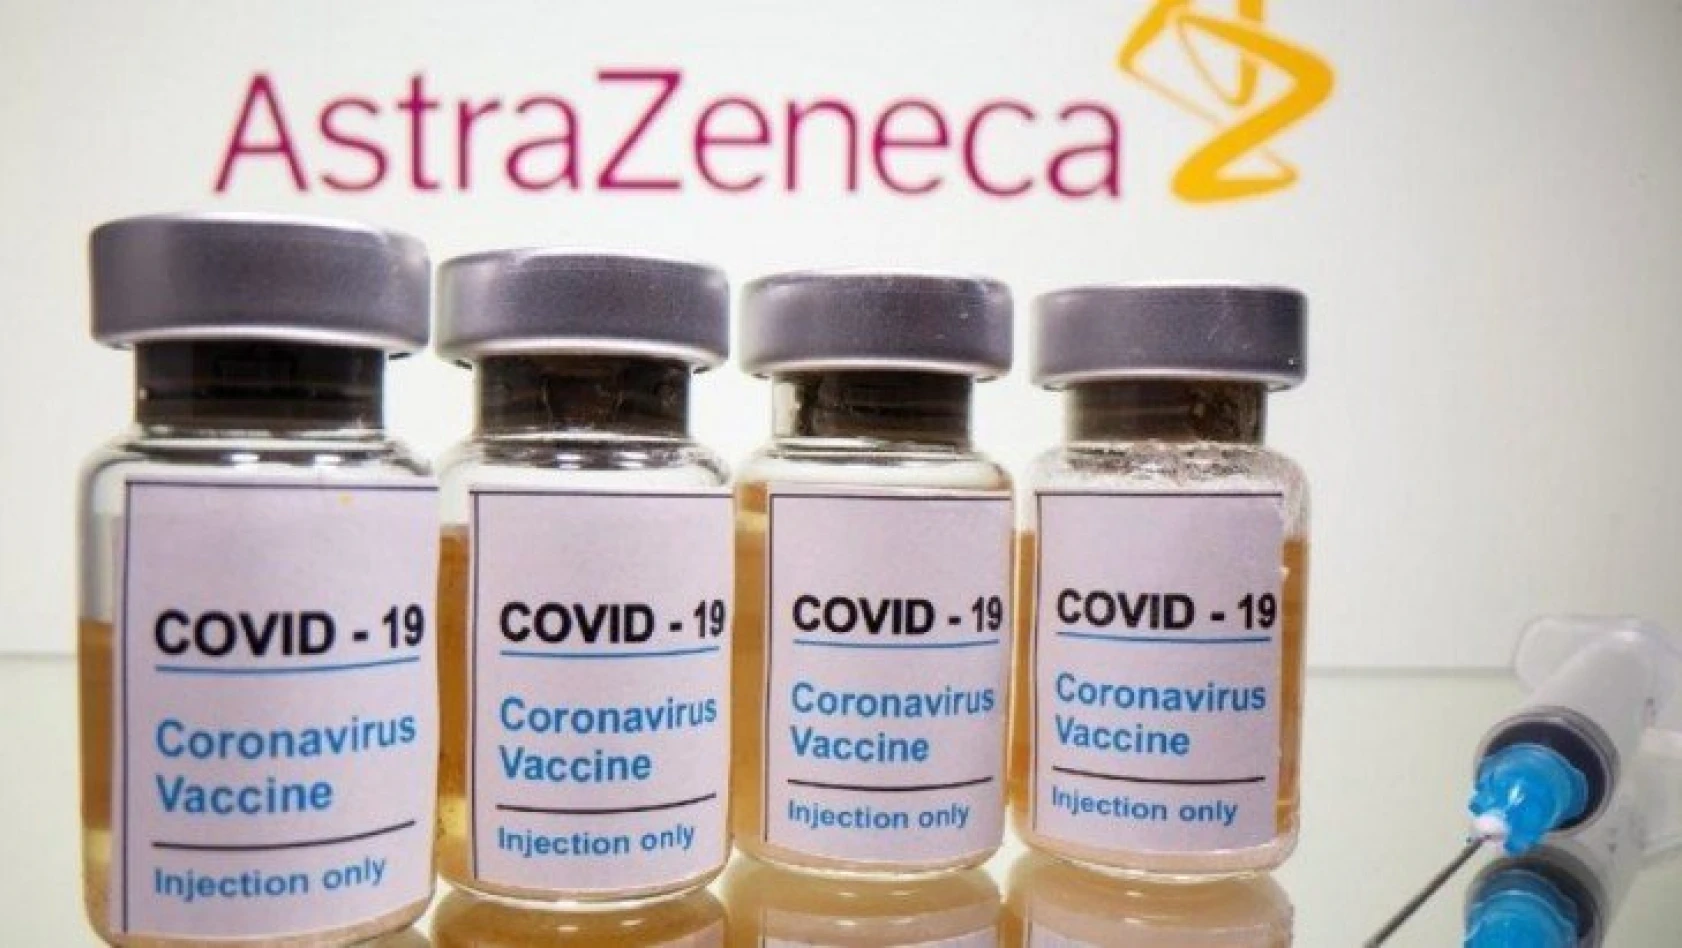 AstraZeneca CEO'su Pascal Seriot, korona aşısı için hem tarih hem de fiyat verdi